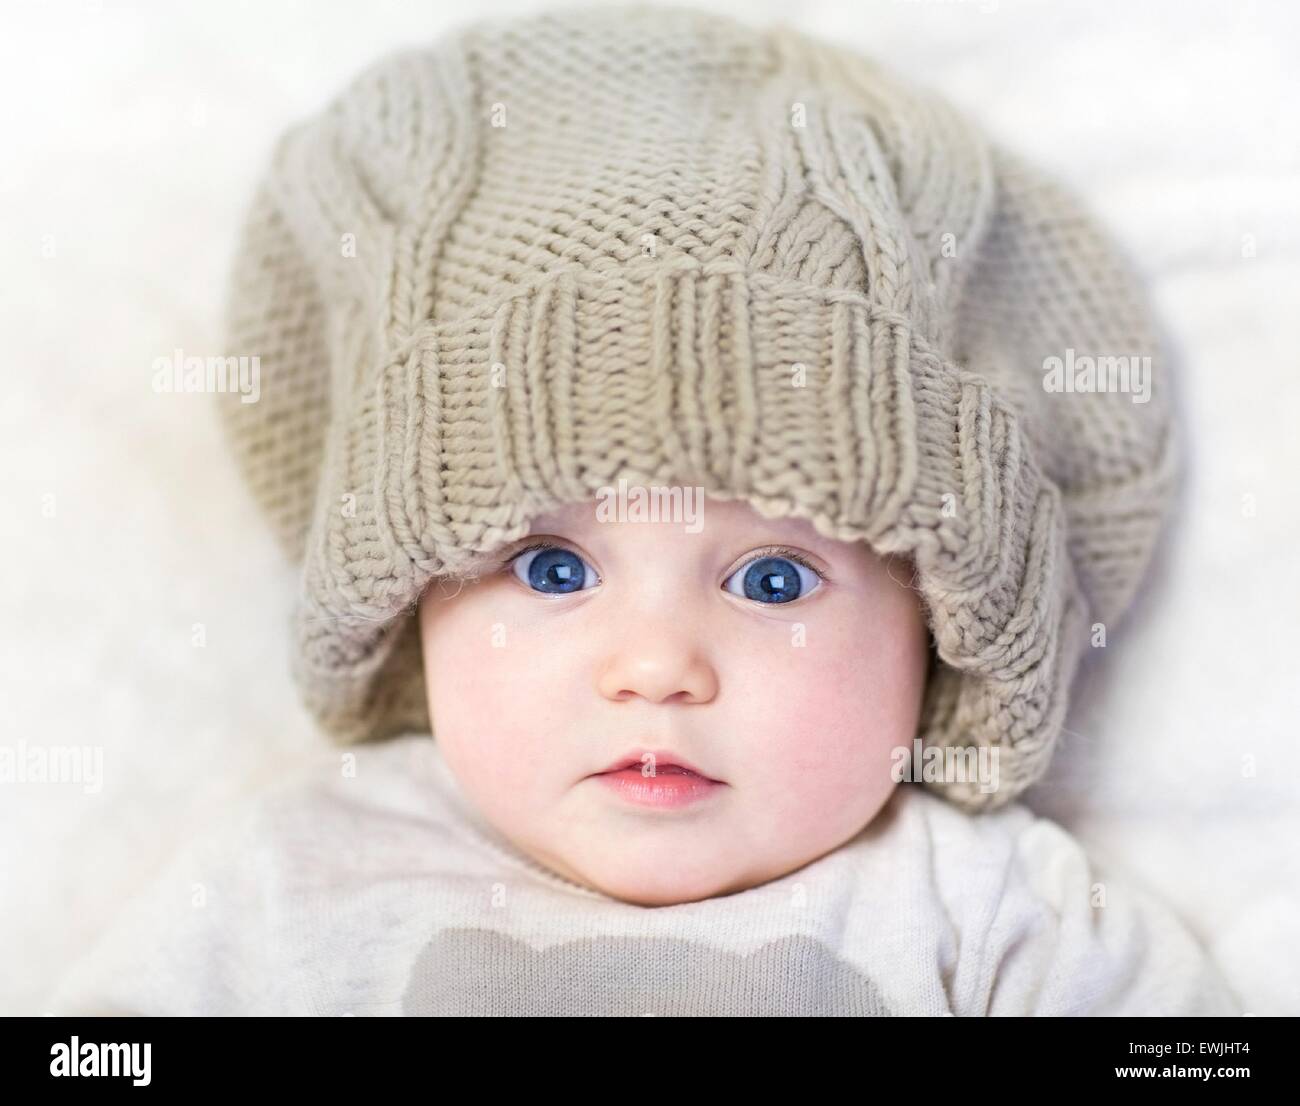 Entzückende Neugeborene Baby tragen eine große Mütze und ein warmer  Pullover entspannend auf einer weißen Decke Stockfotografie - Alamy